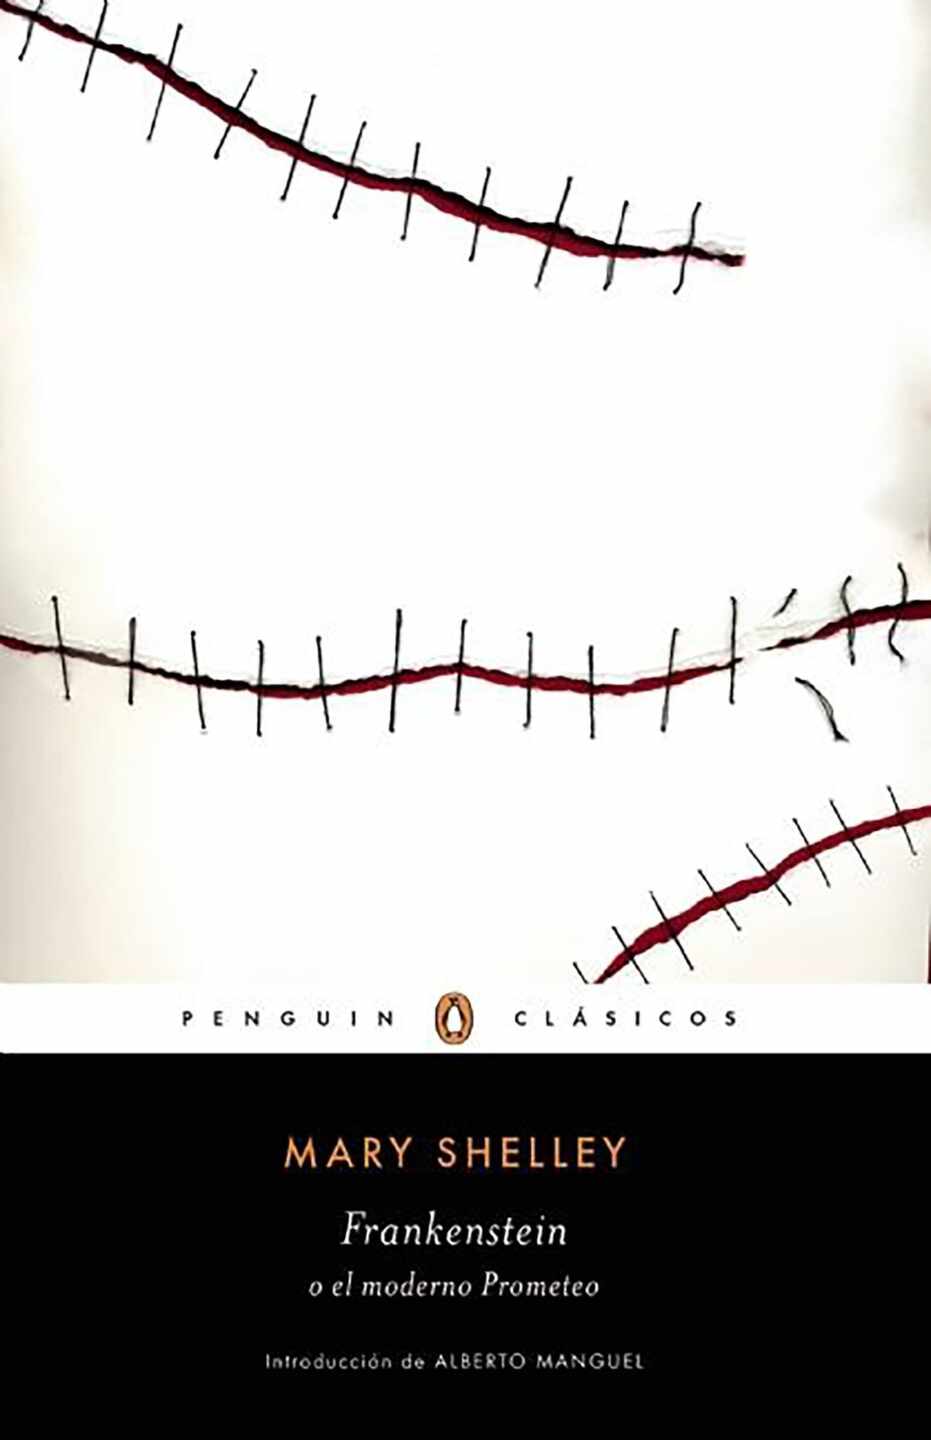 Portada del libro "Frankenstein" de Mary Shelley